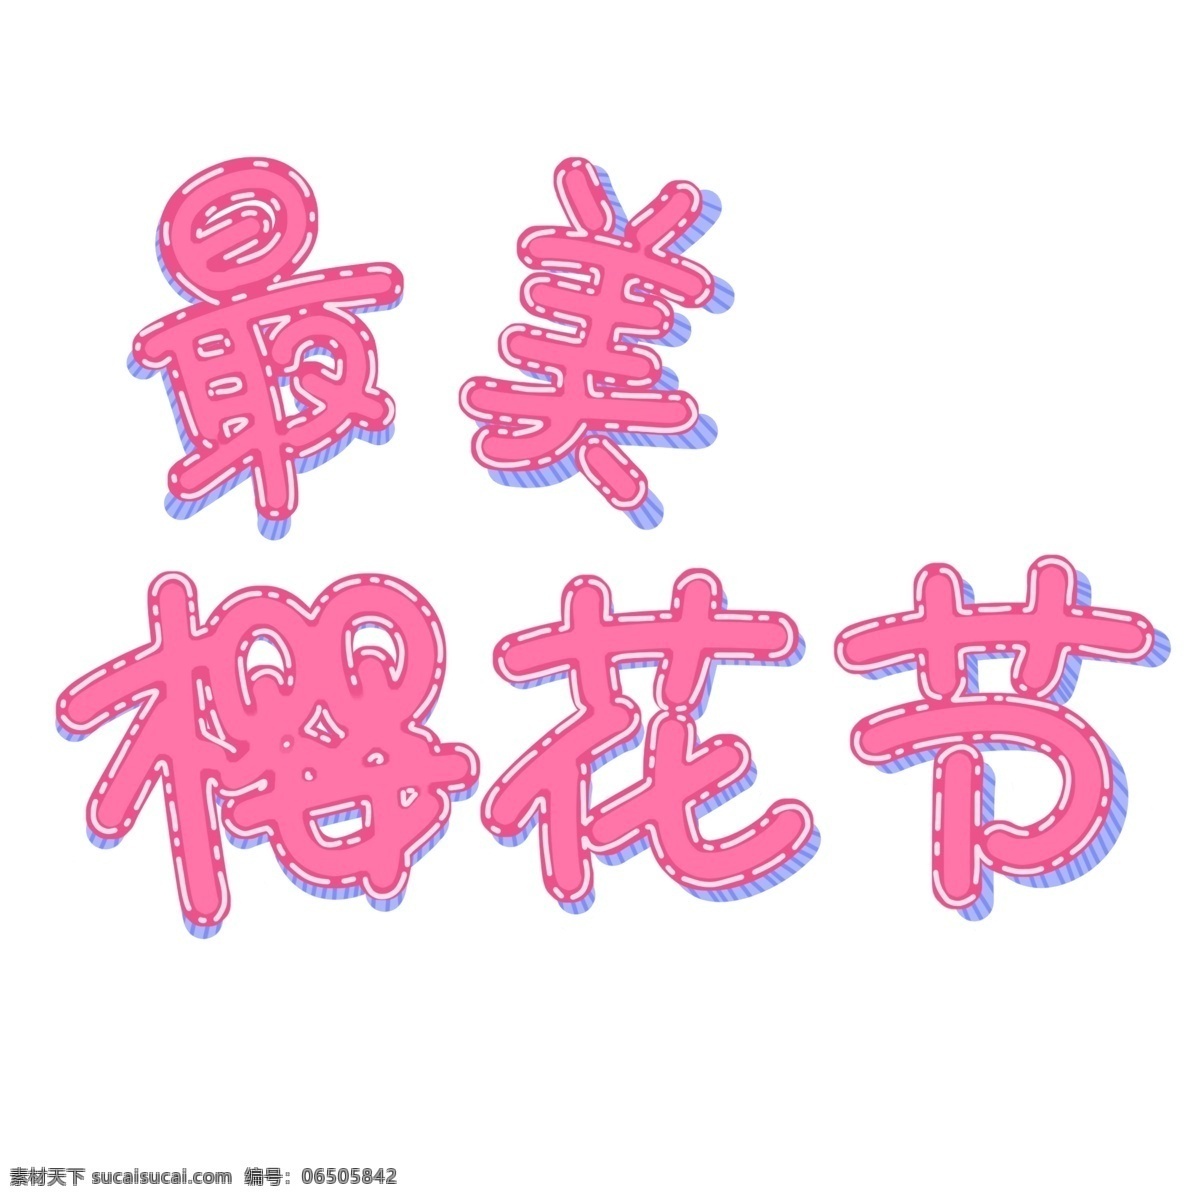 粉色 最美 樱花节 艺术 字 浪漫 唯美 可爱 手绘风 粉红